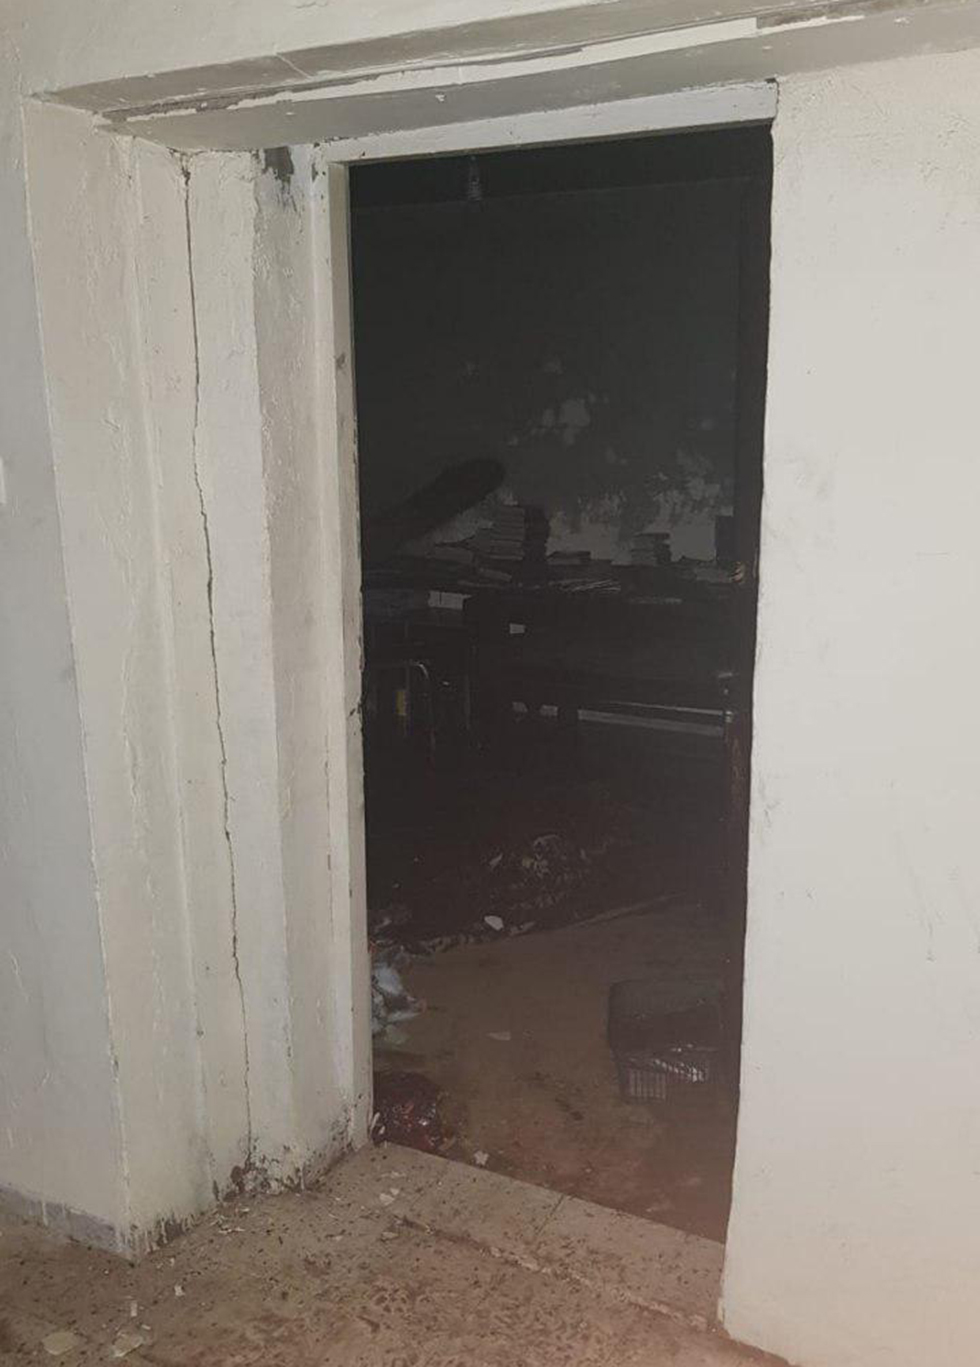 הרוג בעקבות שריפה שפרצה במבנה נטוש ברח' אחד העם בקריית שמונה (צילום: דוברות כבאות והצלה מחוז צפון)